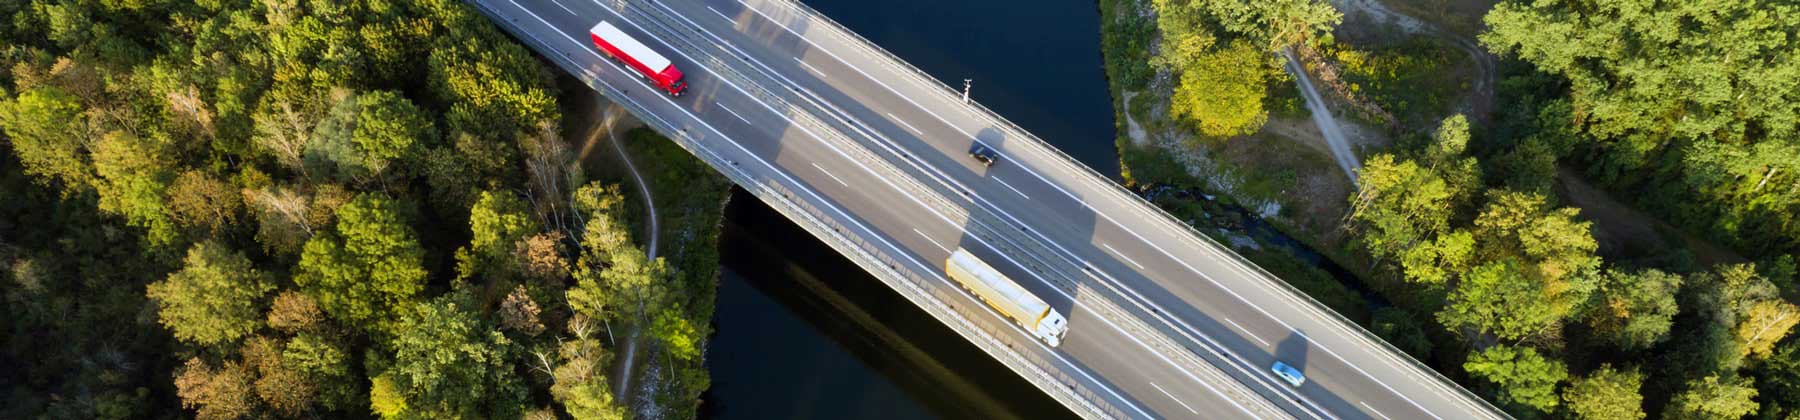 Fotografia aerea di un viadotto autostradale con macchine e tir in movimento